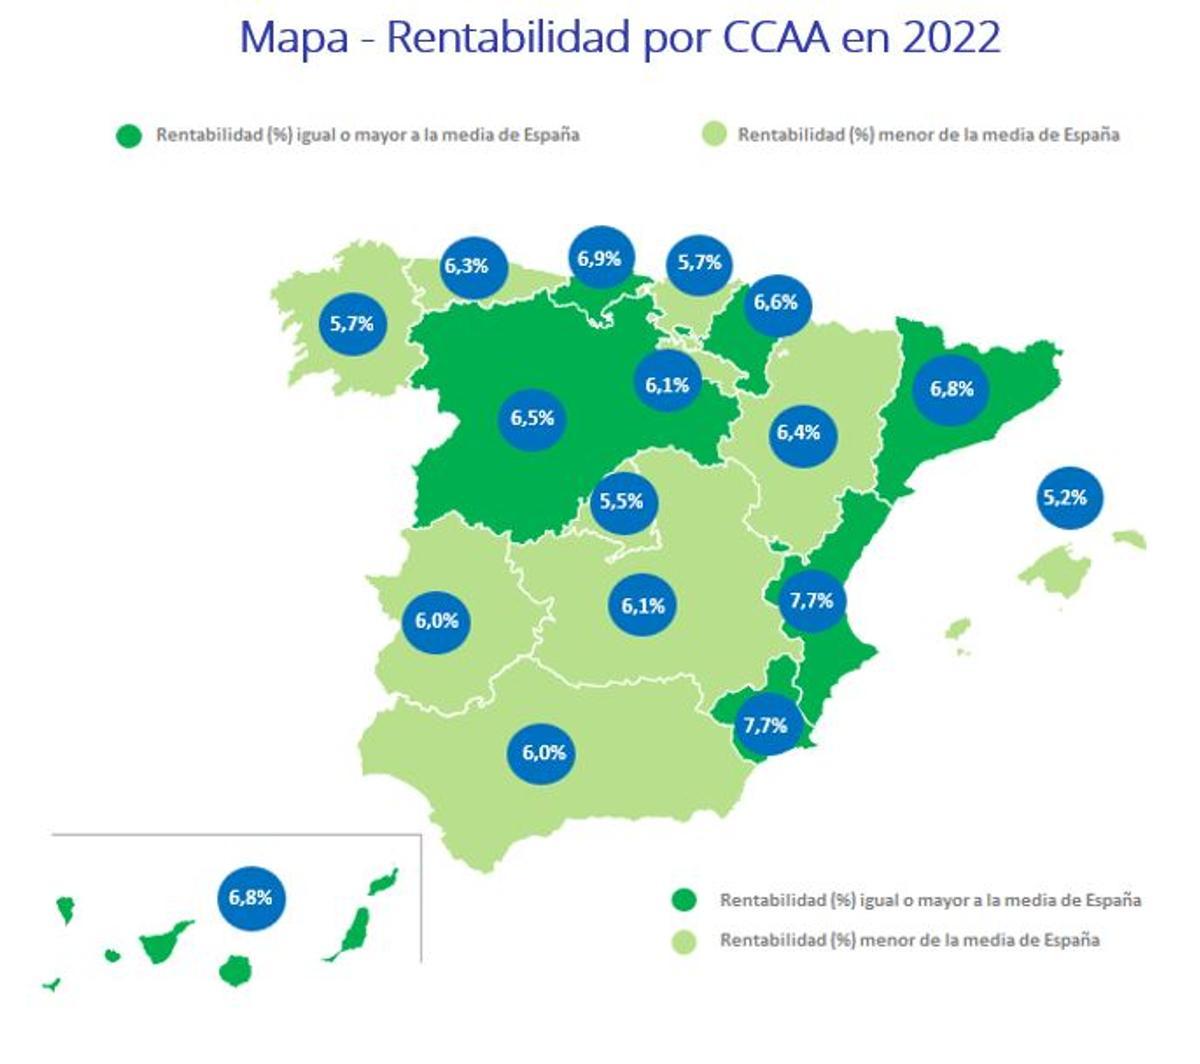 Mapa de rentabilidad en la vivienda por Comunidades Autónomas en 2022